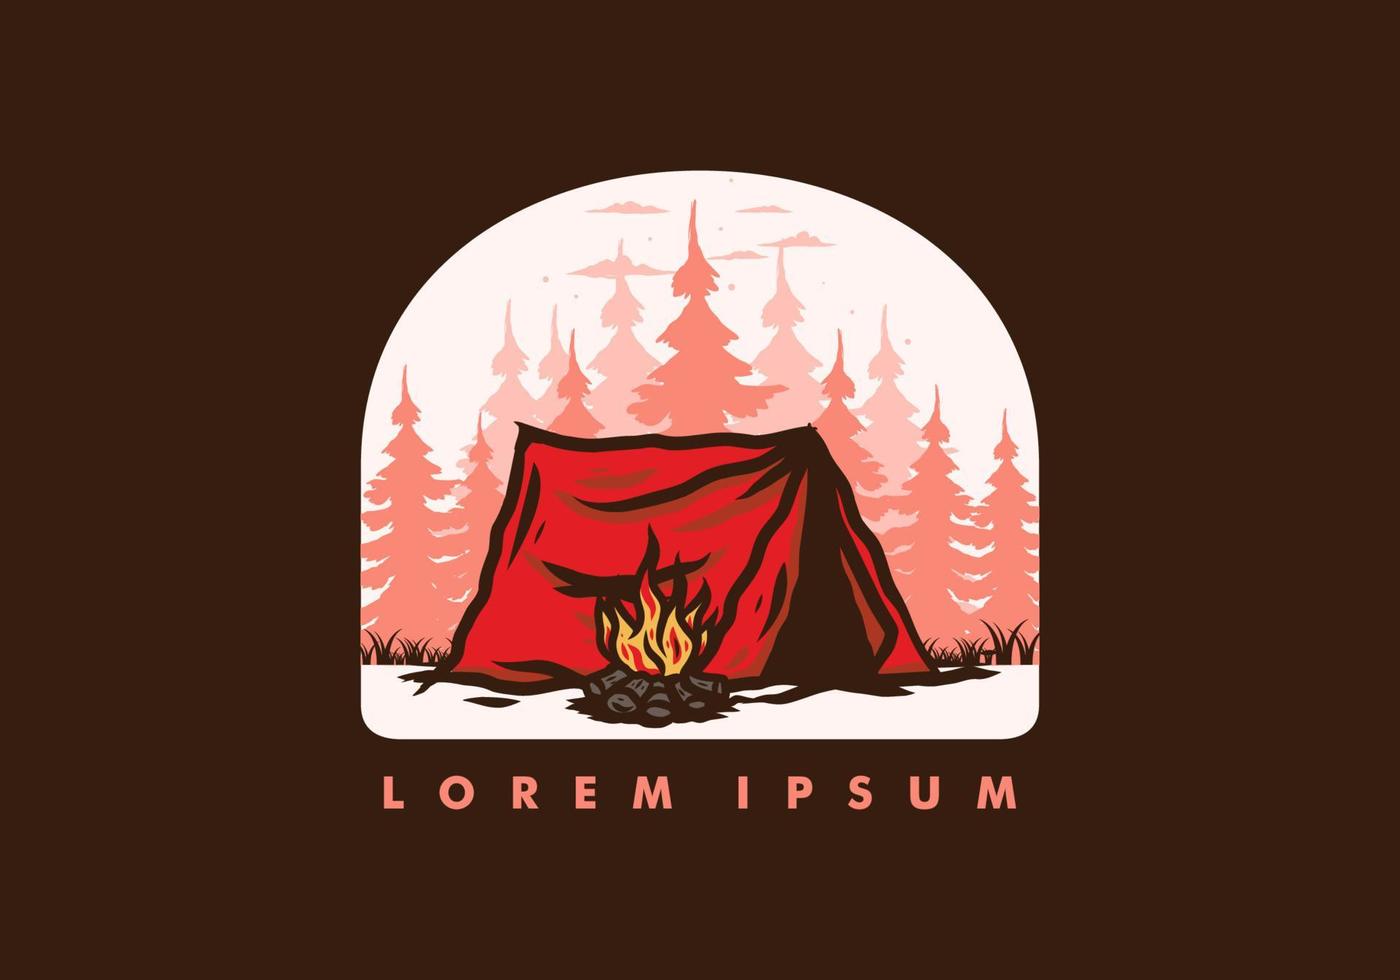 camping en forêt avec insigne d'illustration de feu de joie vecteur